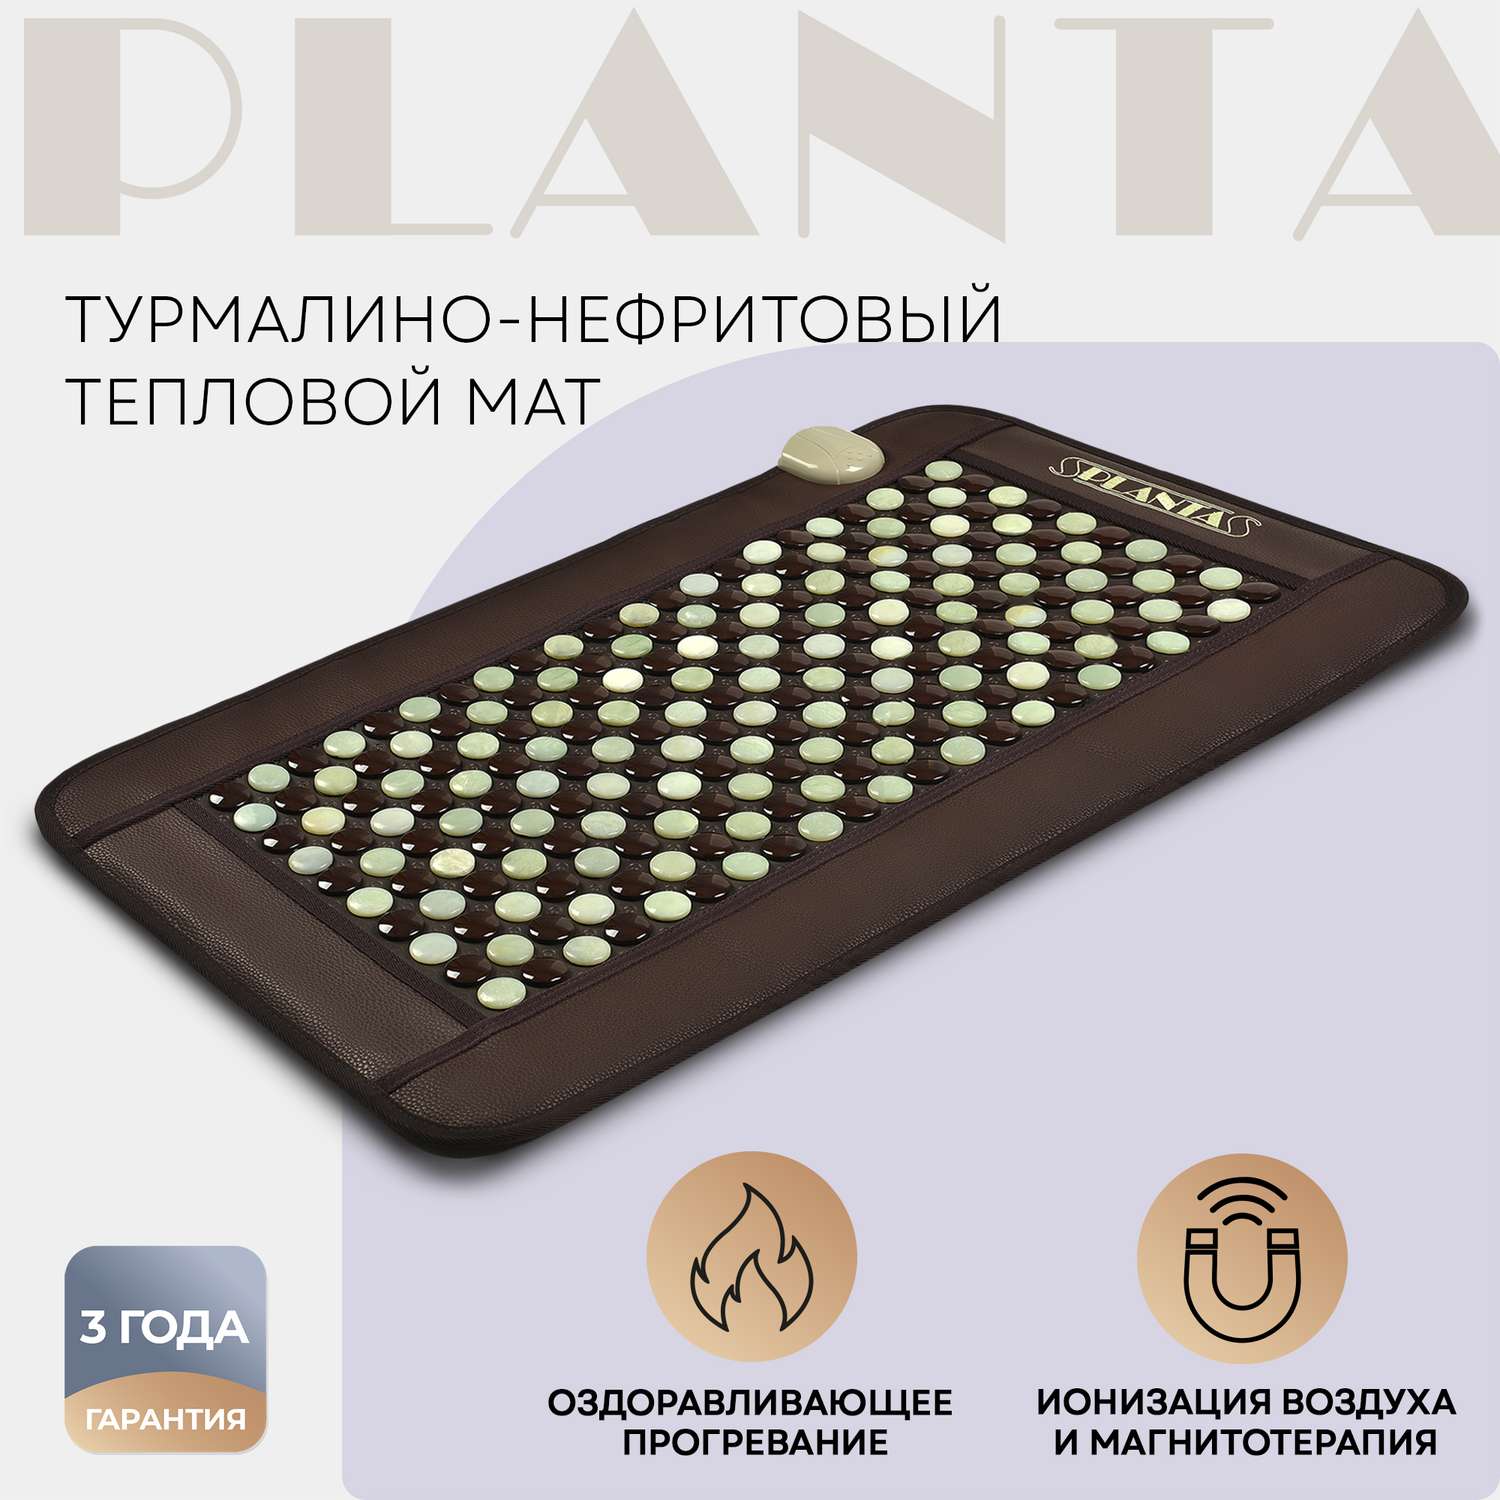 Массажный коврик Planta Турмалиново-нефритовый тепловой PL-MAT1 220 камней нагрев до 70 градусов - фото 1